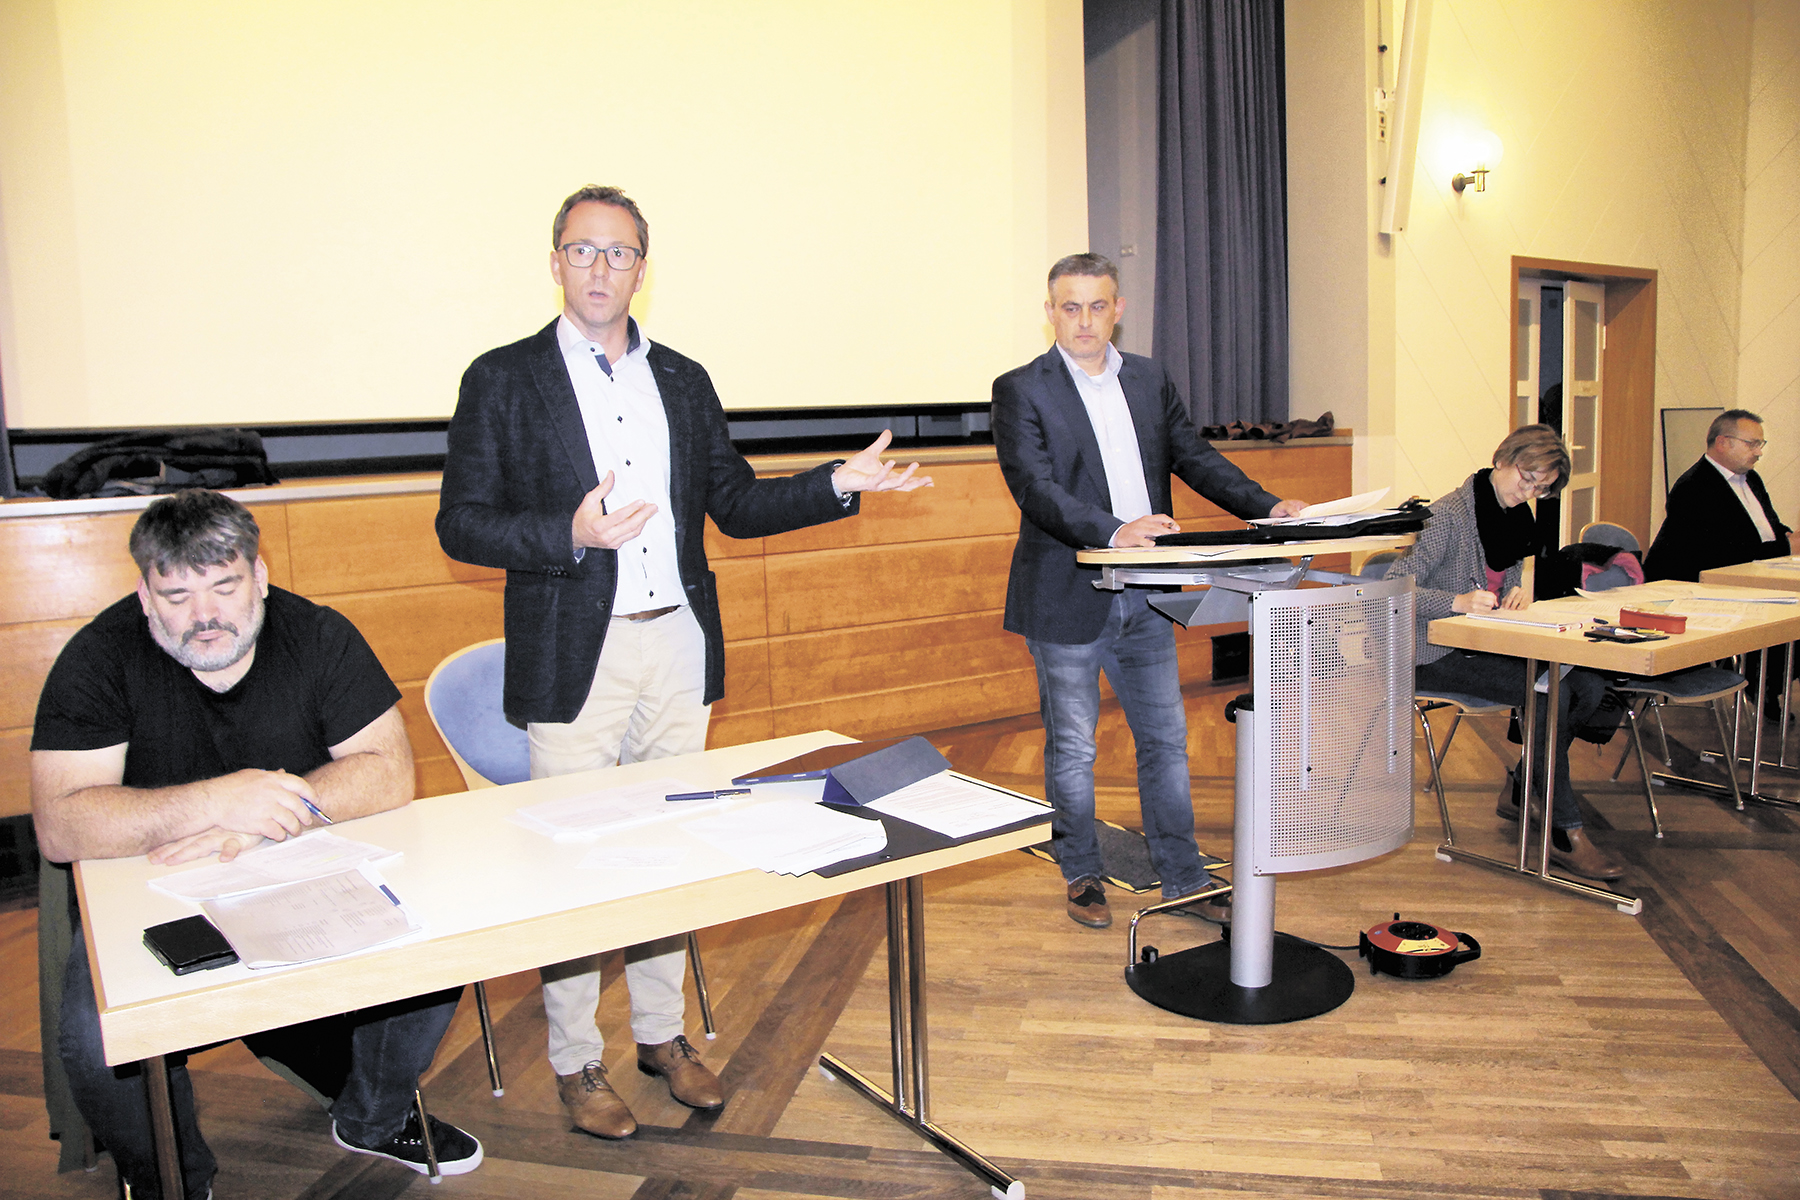 Samtgemeindebürgermeister Volker Senftleben (stehend links) und der stellvertretende Ratsvorsitzende Lars Wedekind (stehend rechts) bei der SG-Ratssitzung am 12.10.2022. Foto: Ehlers/LDZ.